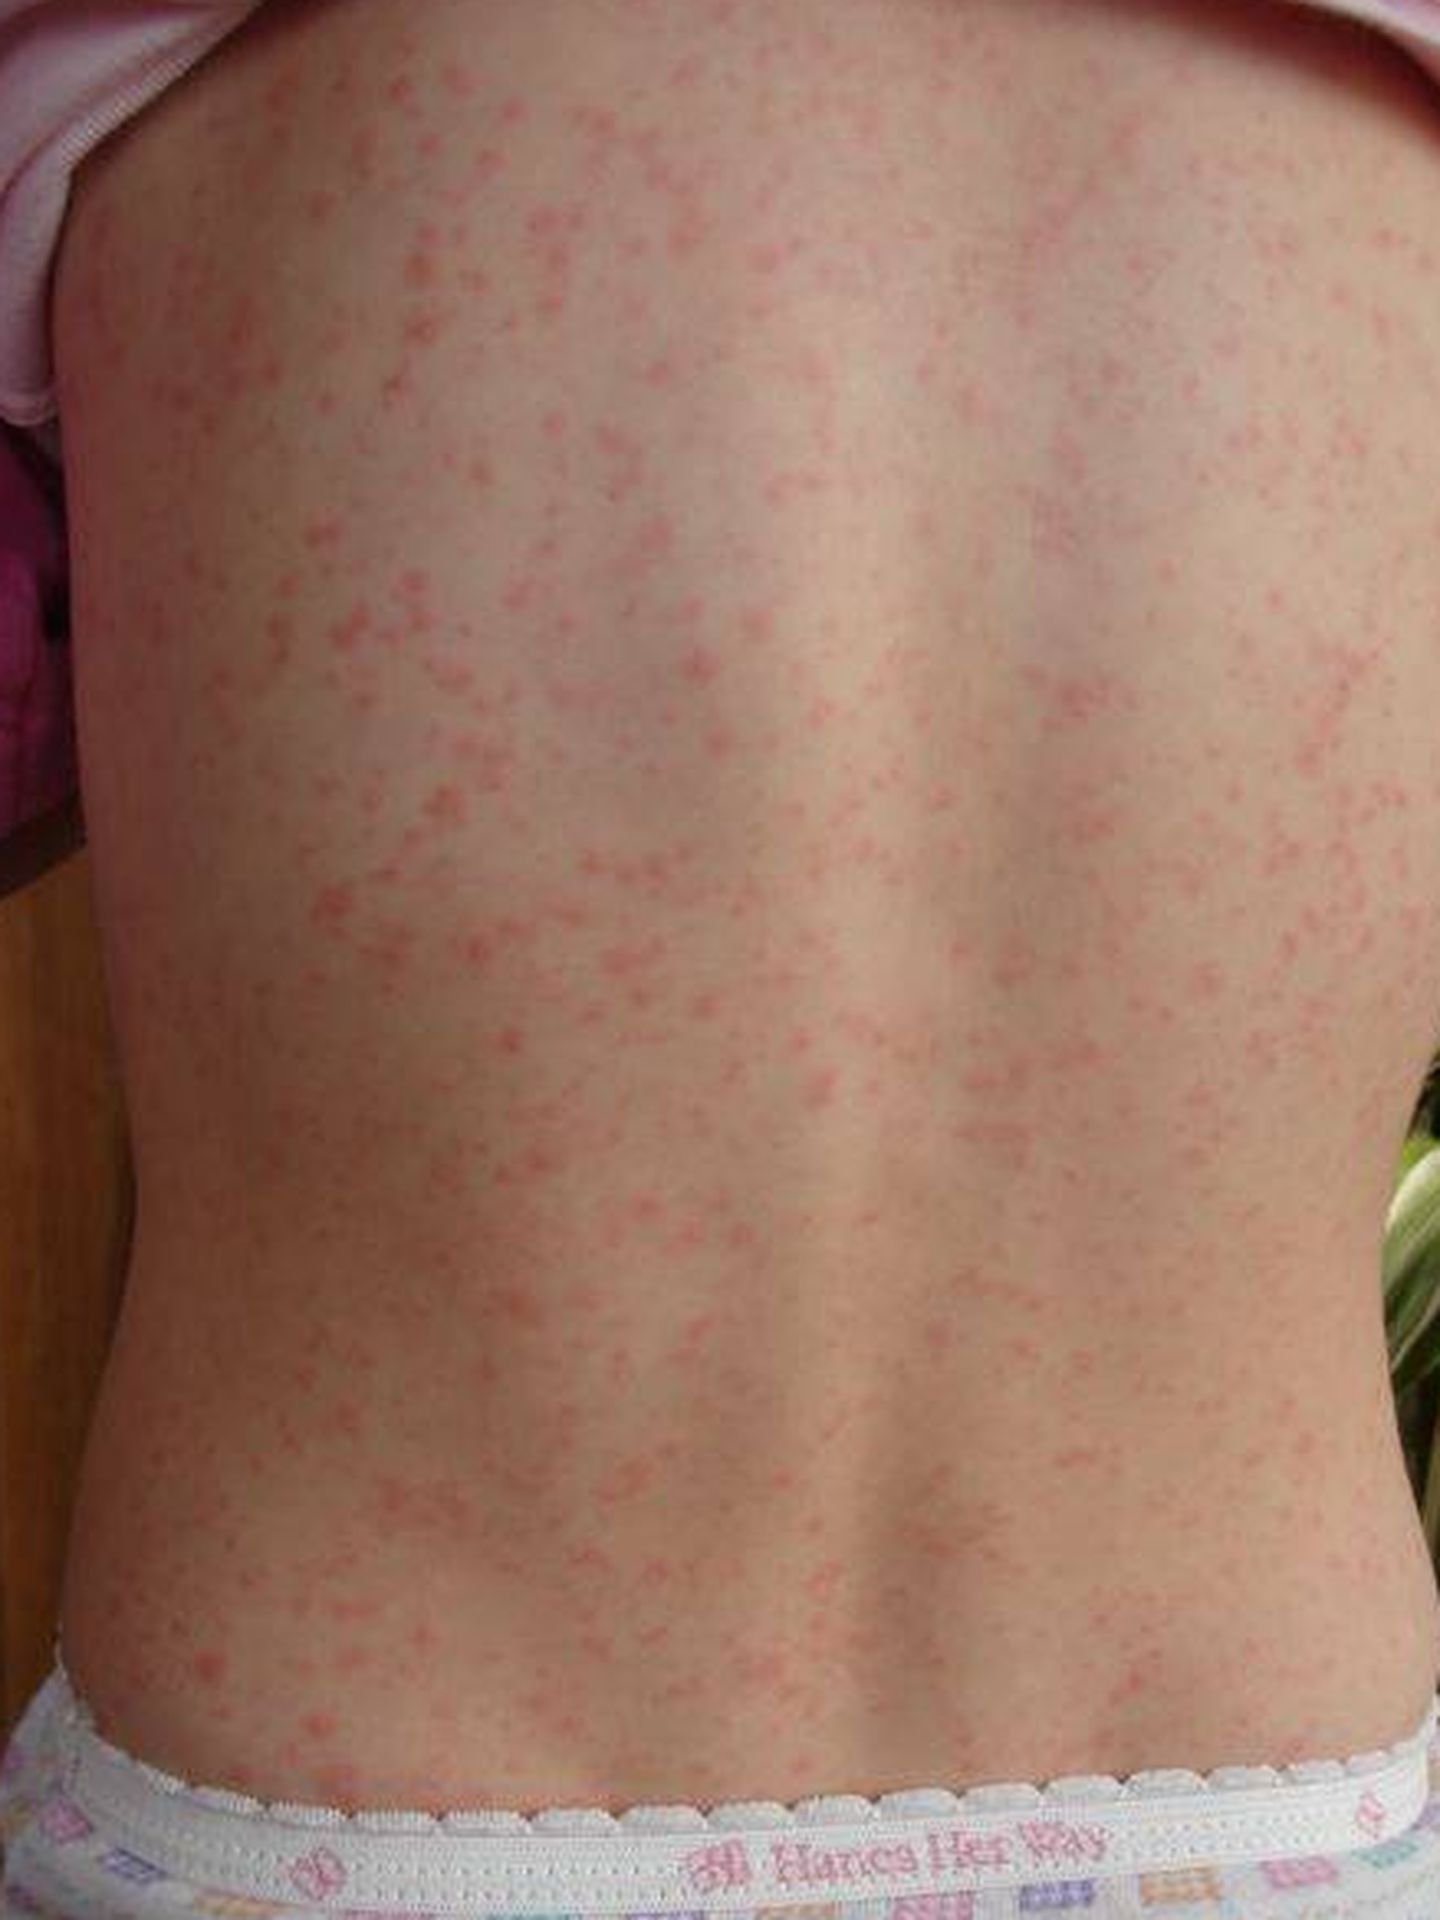 Eritemas provocadas en la piel por la escarlatina. Foto: Wikipedia